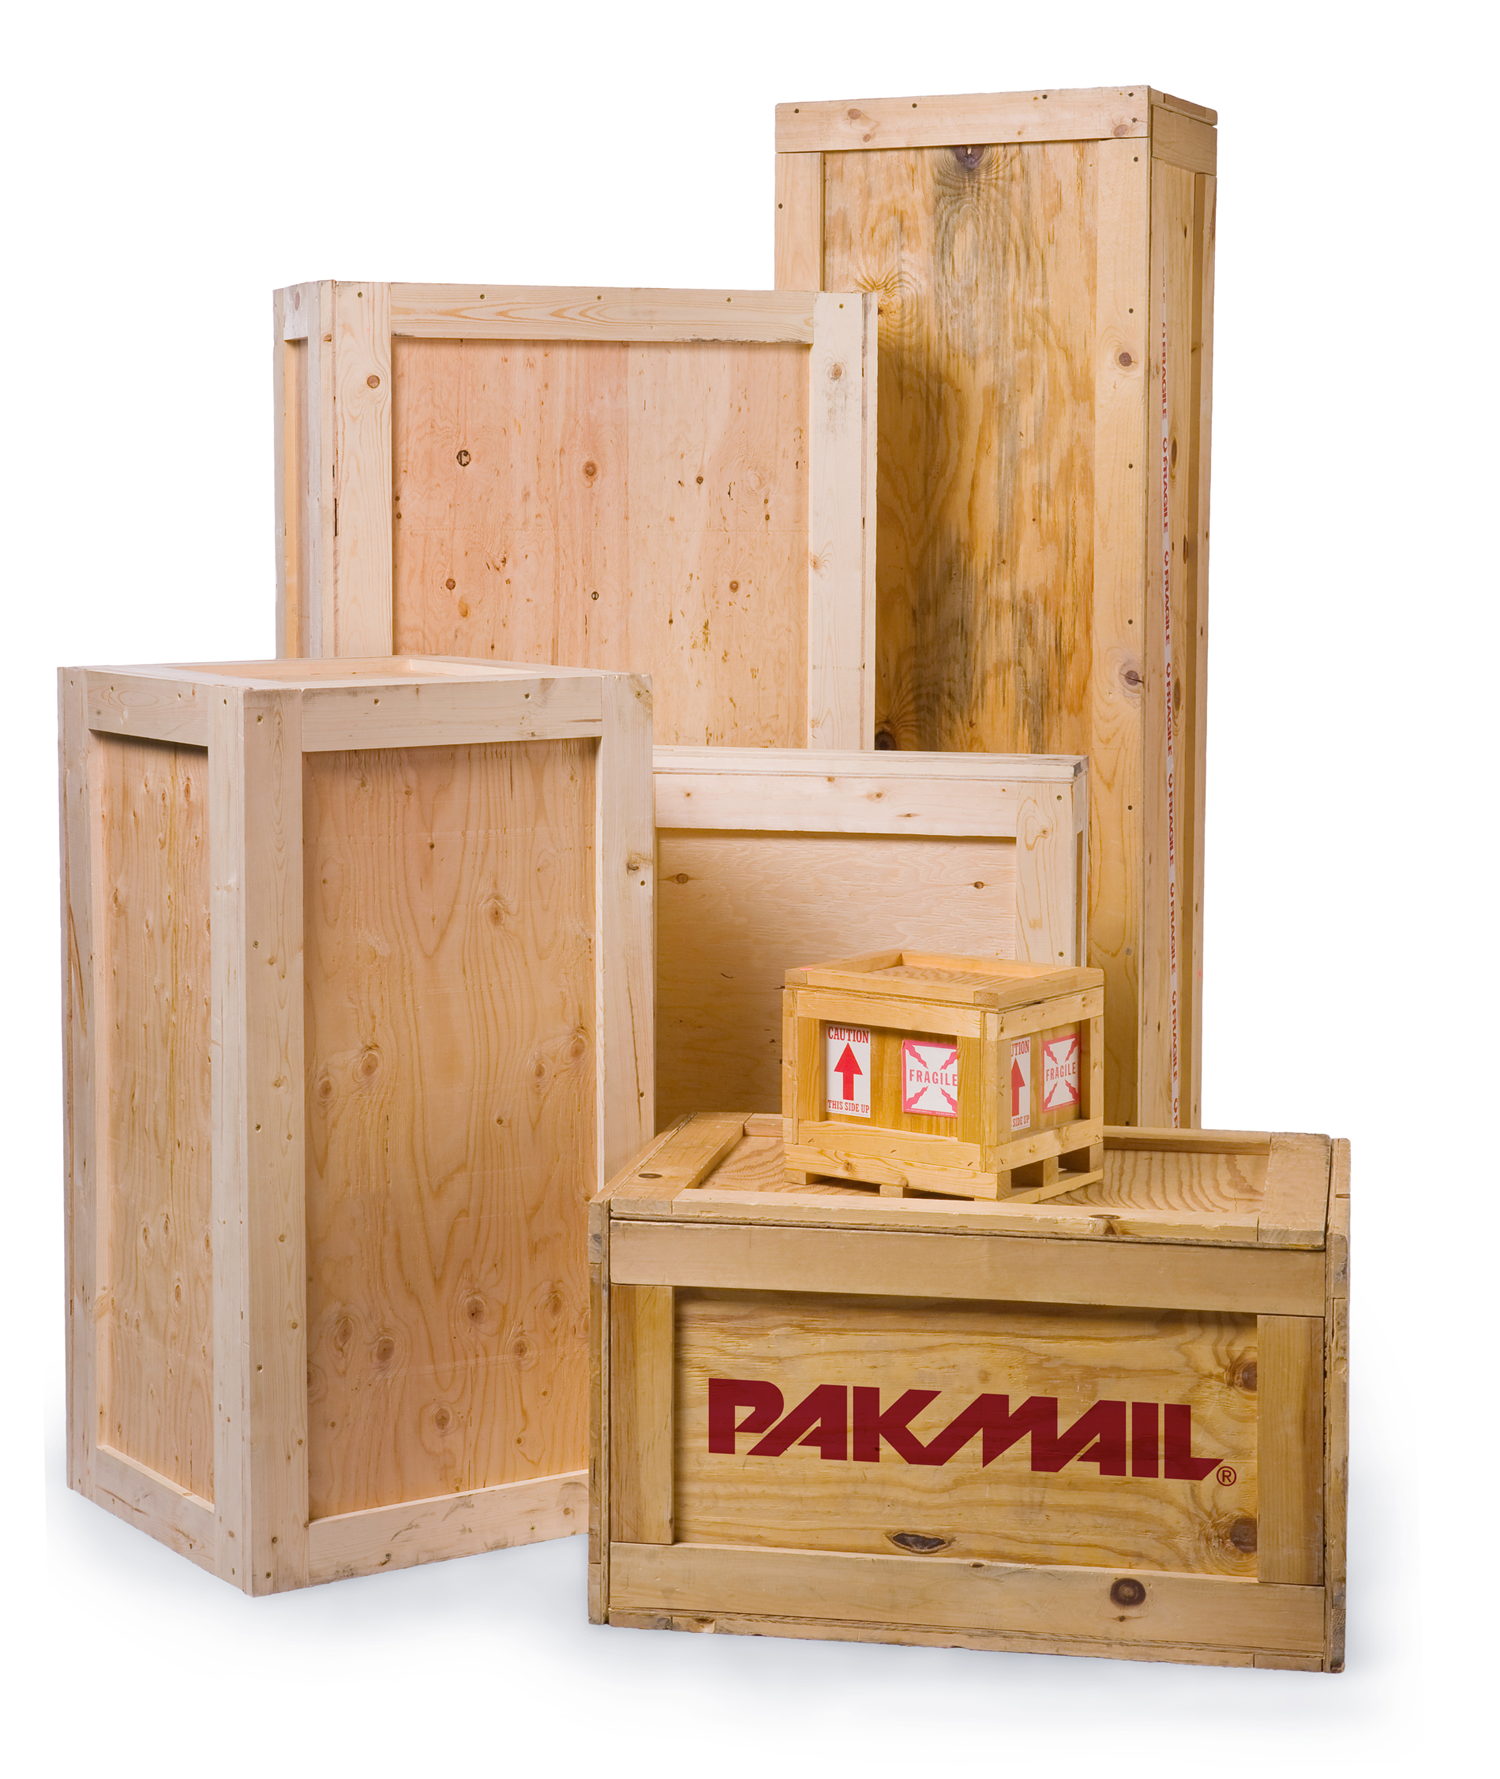 Pak Mail Crates